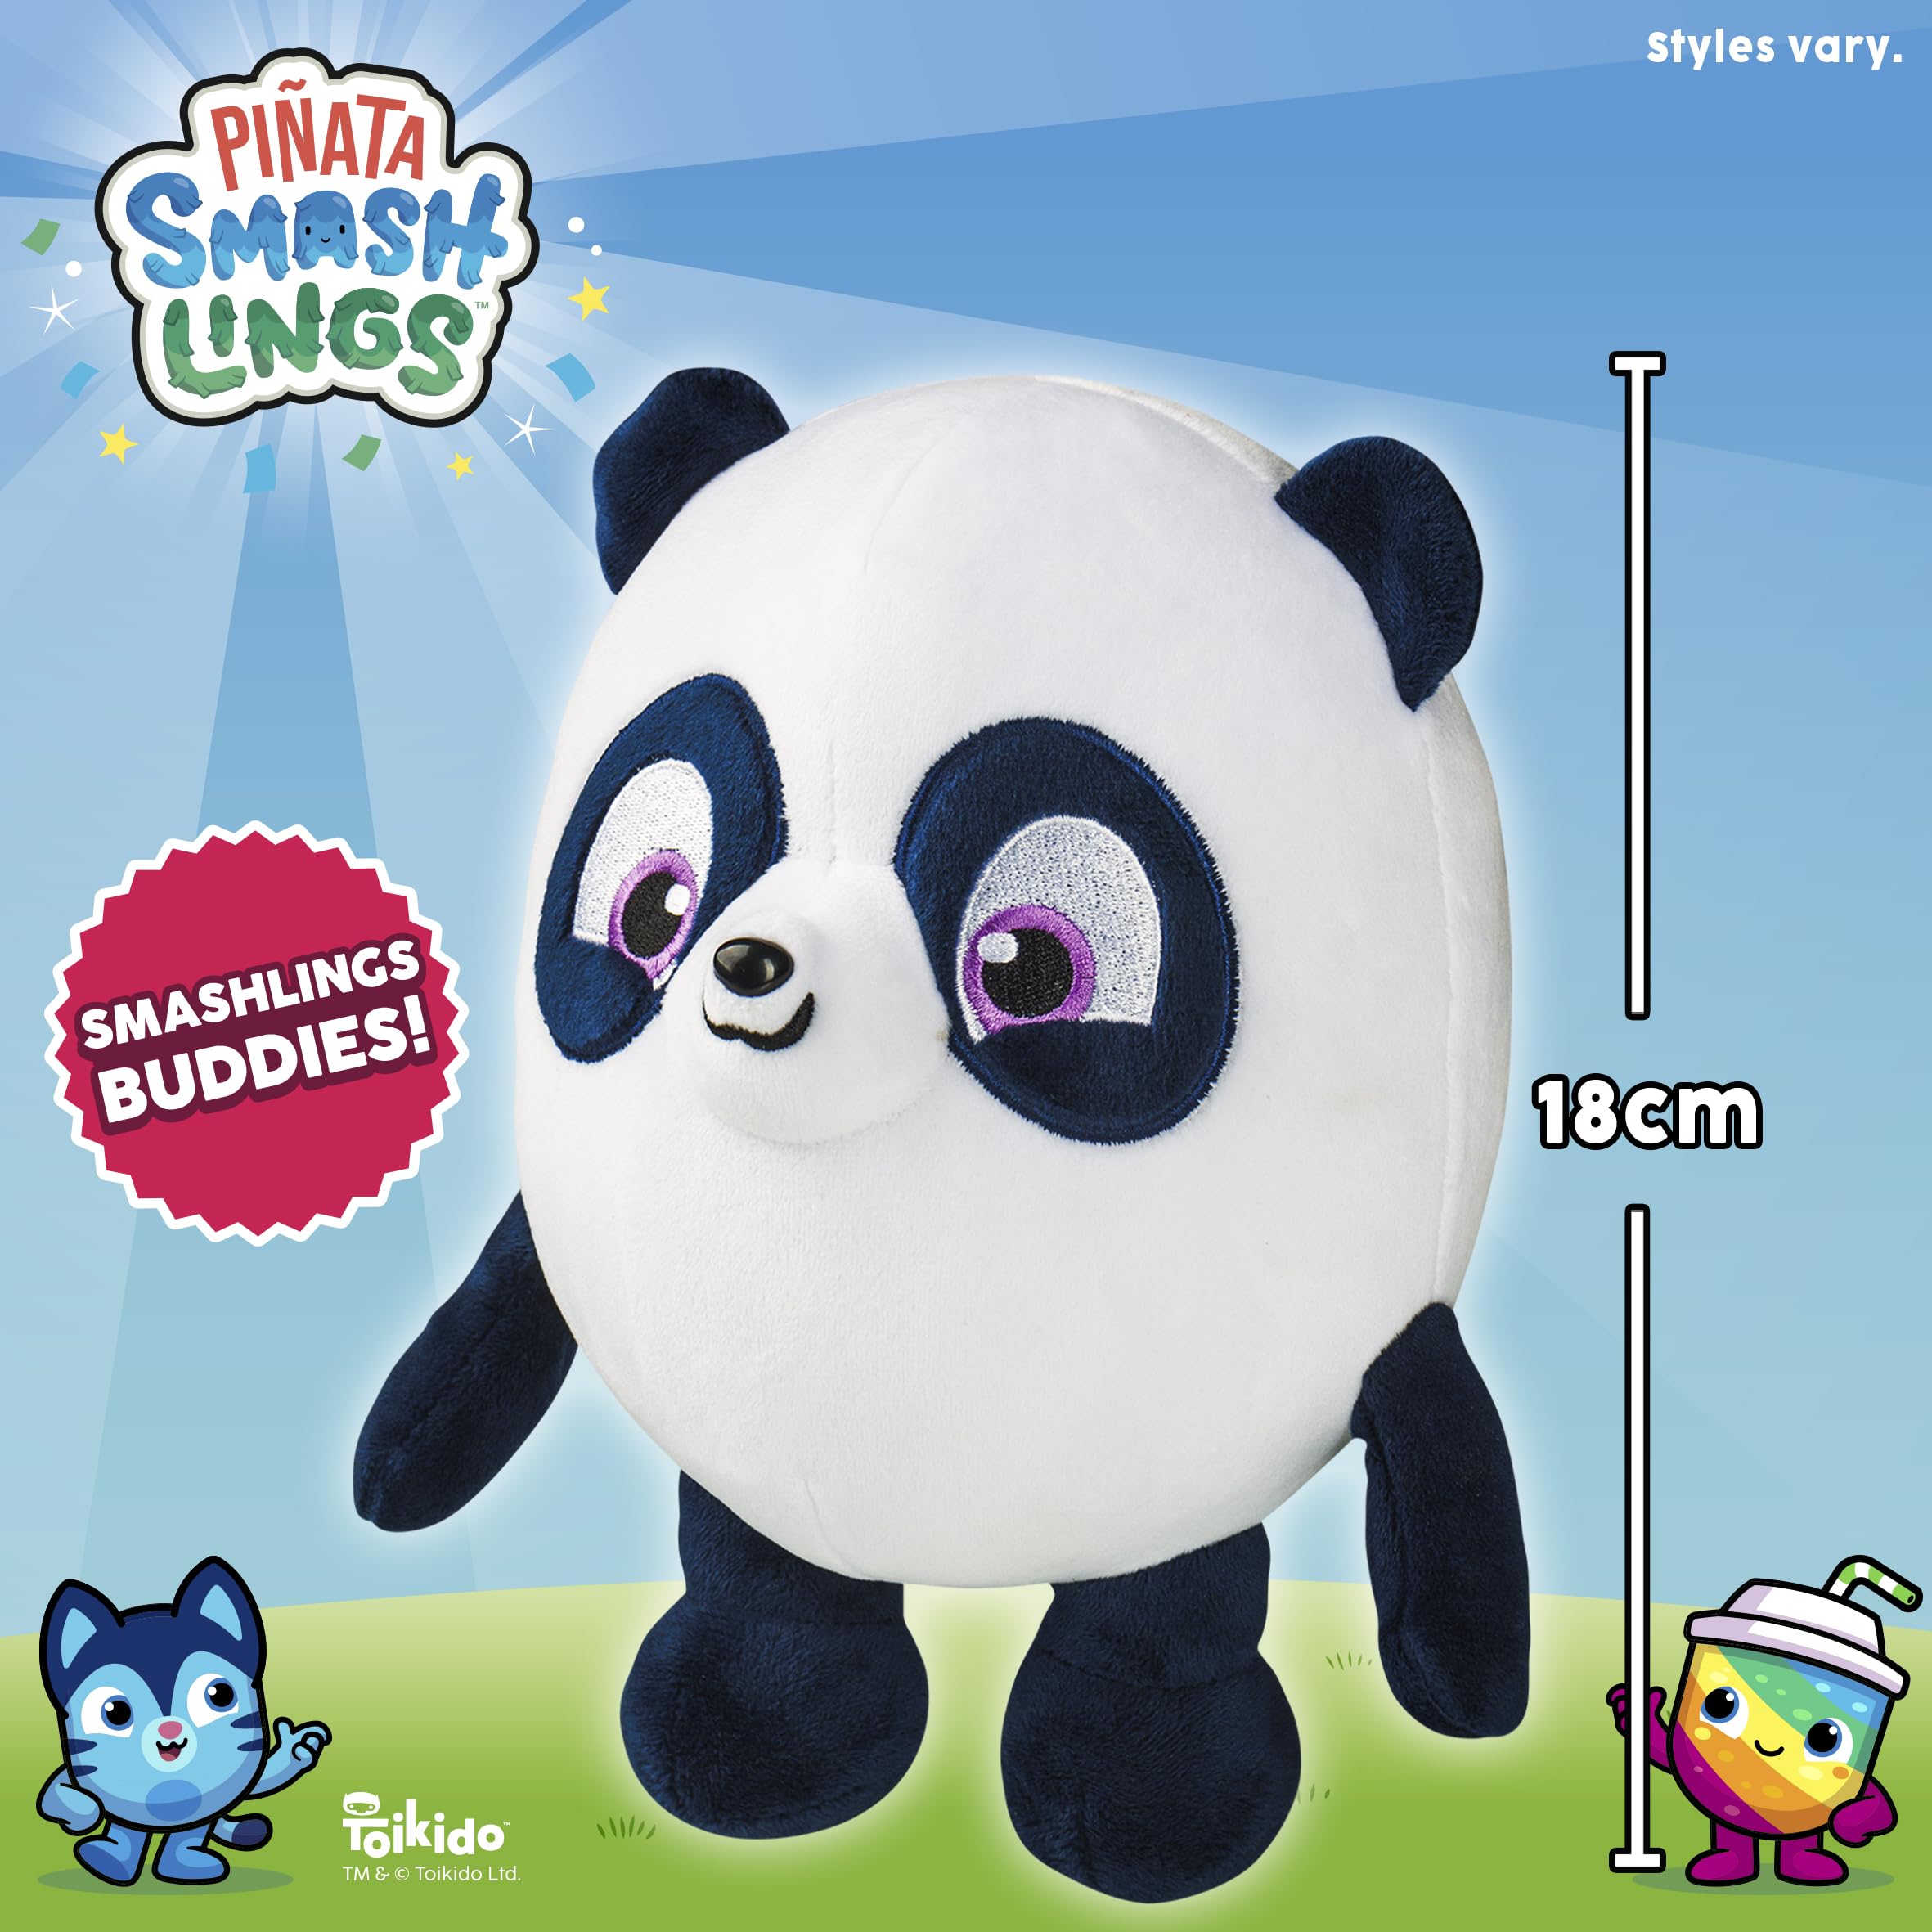 Piñata Smashlings - Plush Buddies Panda